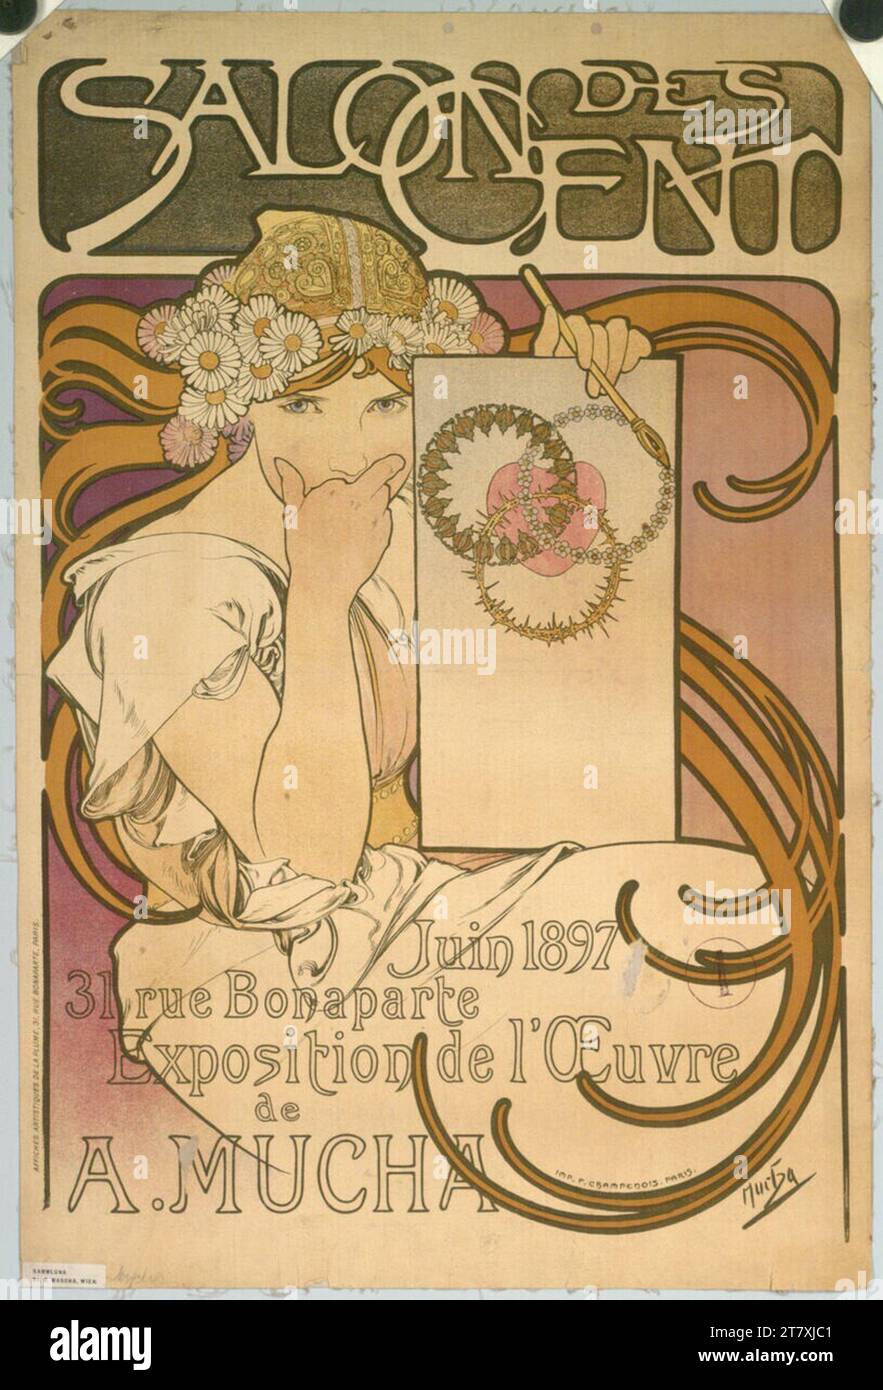 Alfons Maria Mucha salon des cent ; 1897 juin ; 31, rue Bonaparte ; exposition de l'œuvre de A. Mucha. Couleur 1897, 1897 Banque D'Images